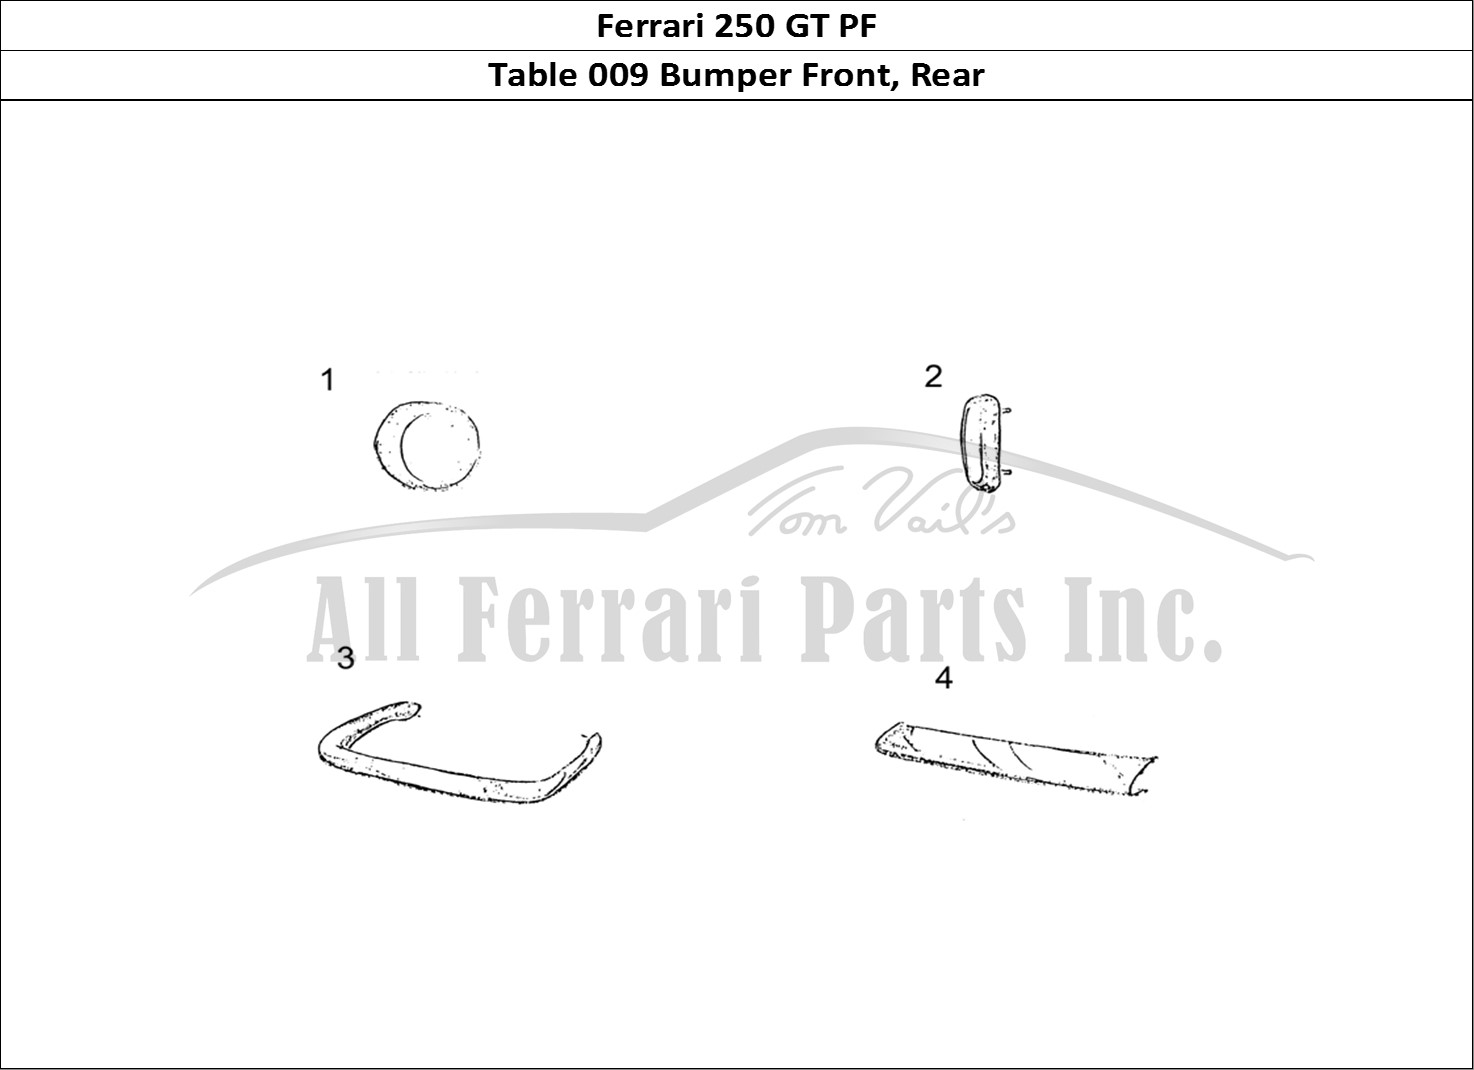 Ferrari Parts Ferrari 250 GT (Coachwork) Page 009 Bumper Front and Rear